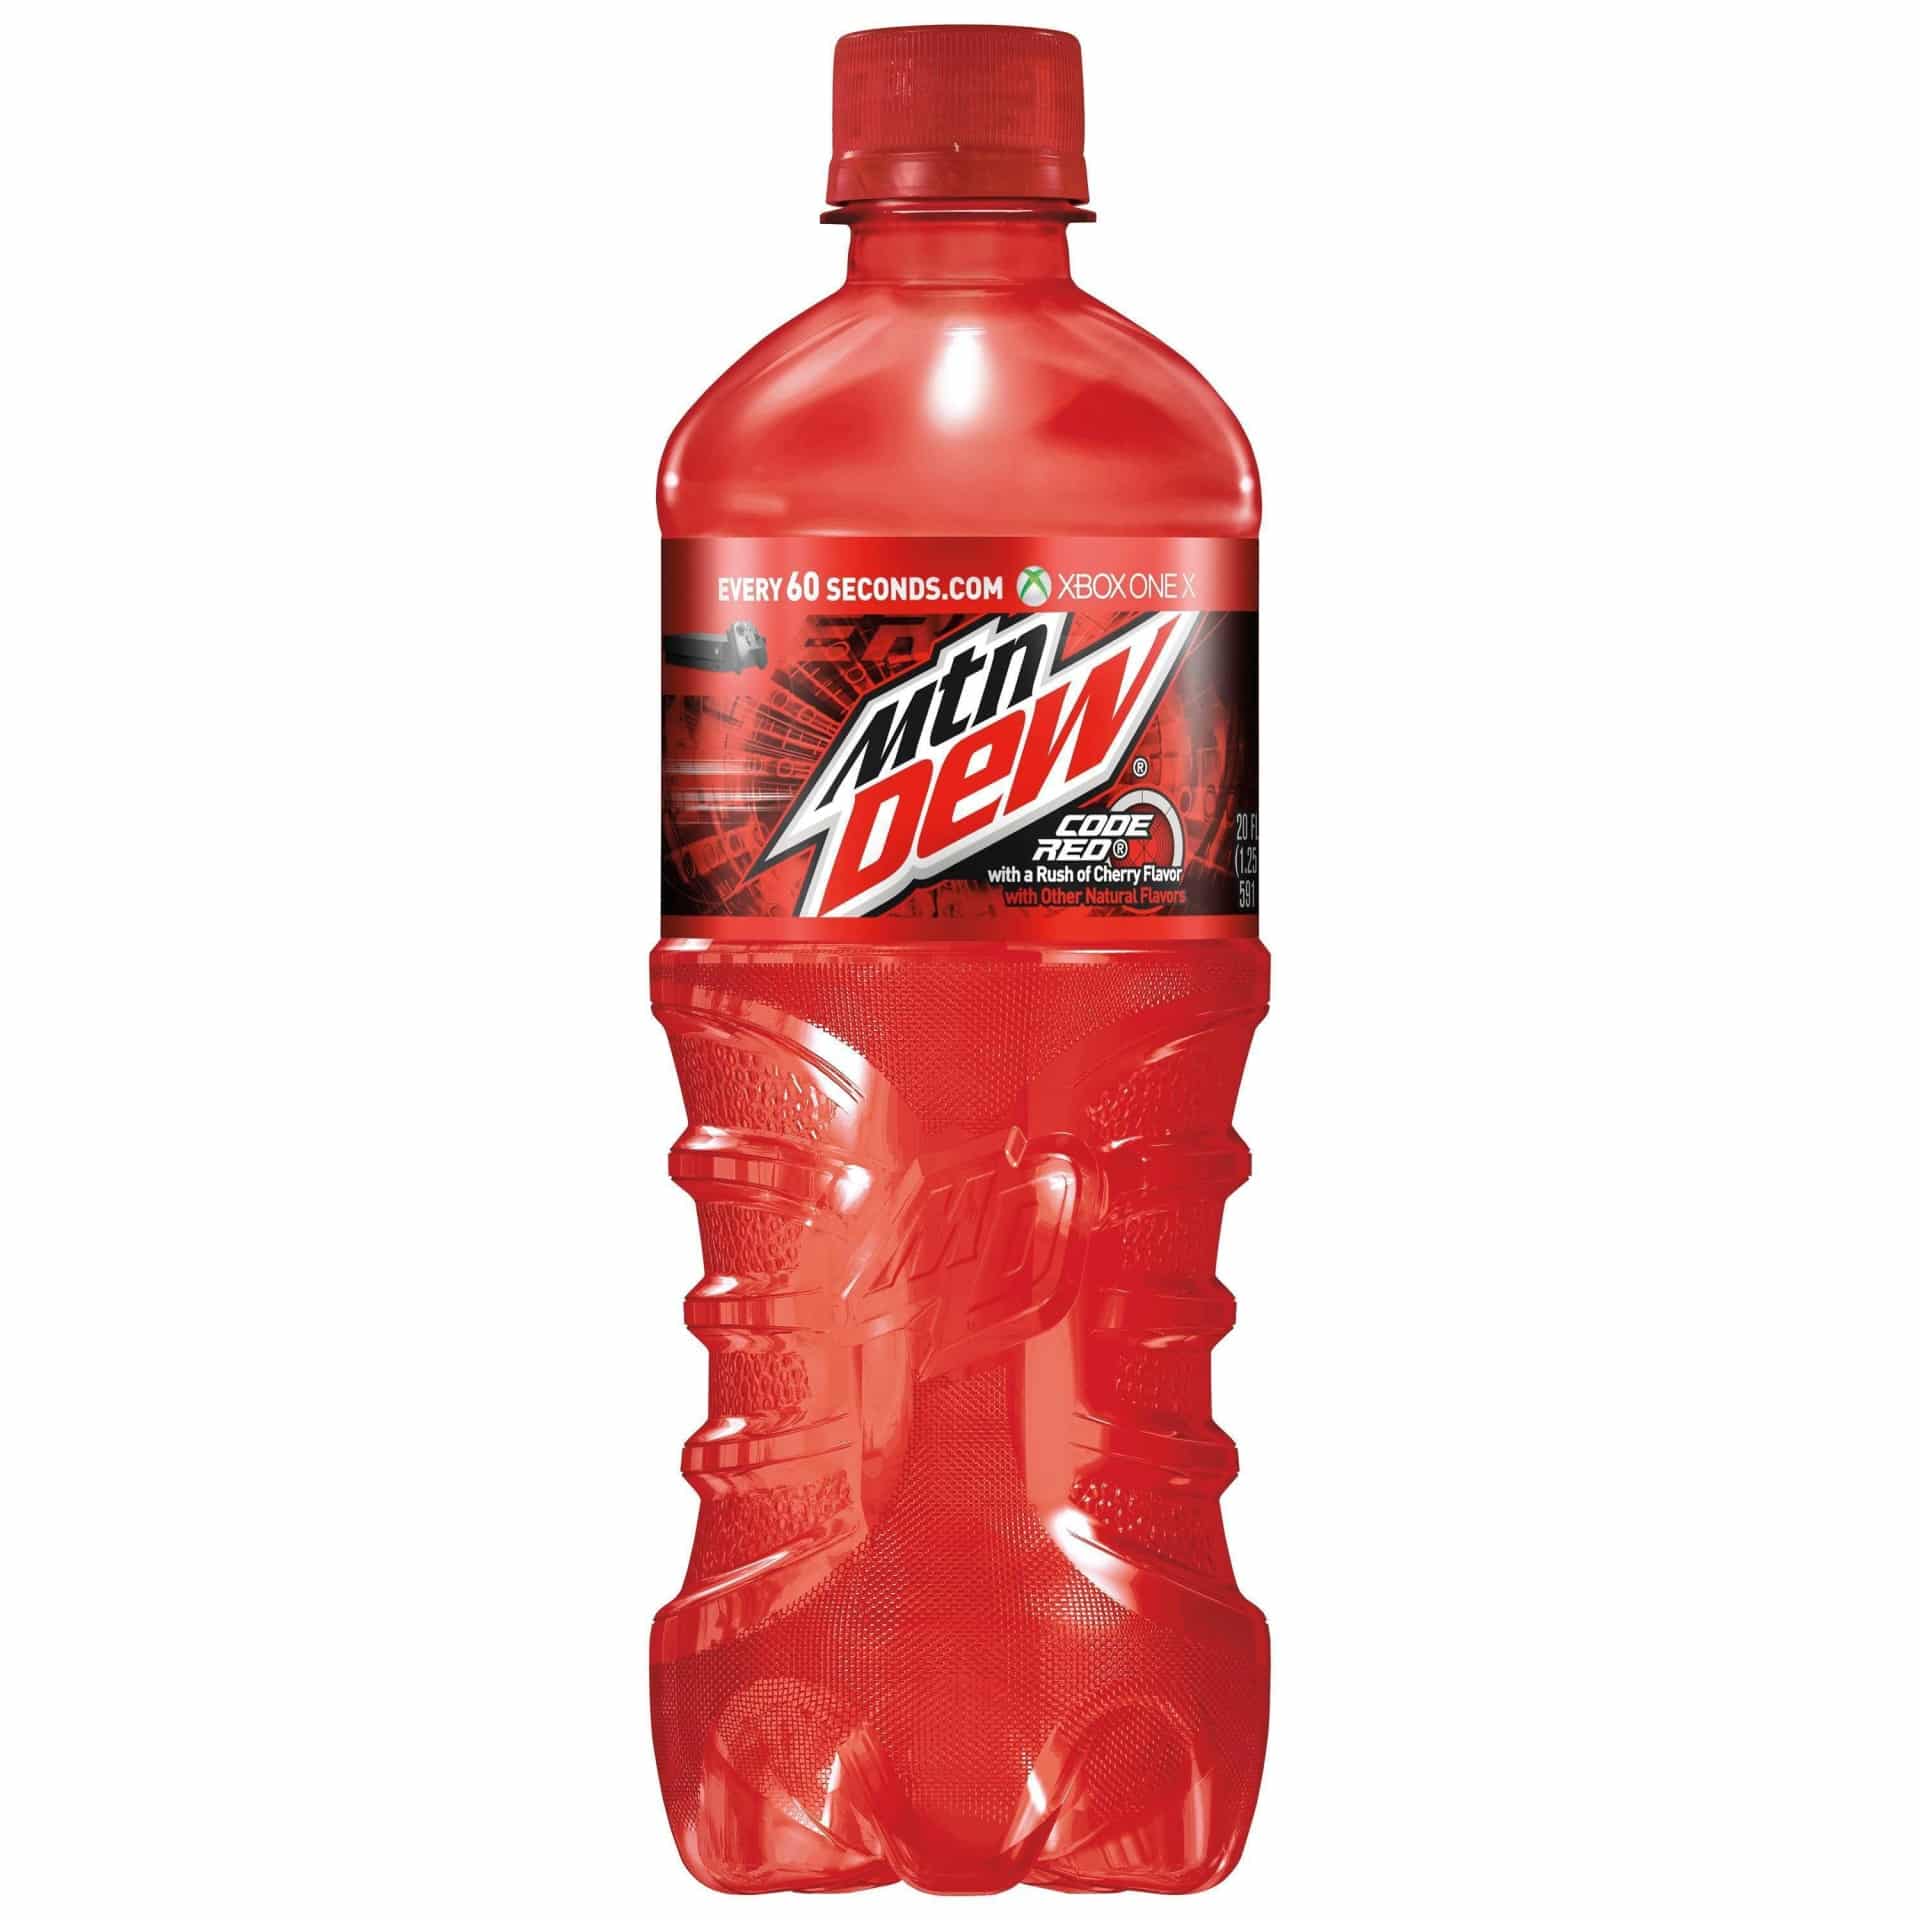 Mtn Dew Mountain Dew Code Red Soda Bottle 20 fl oz